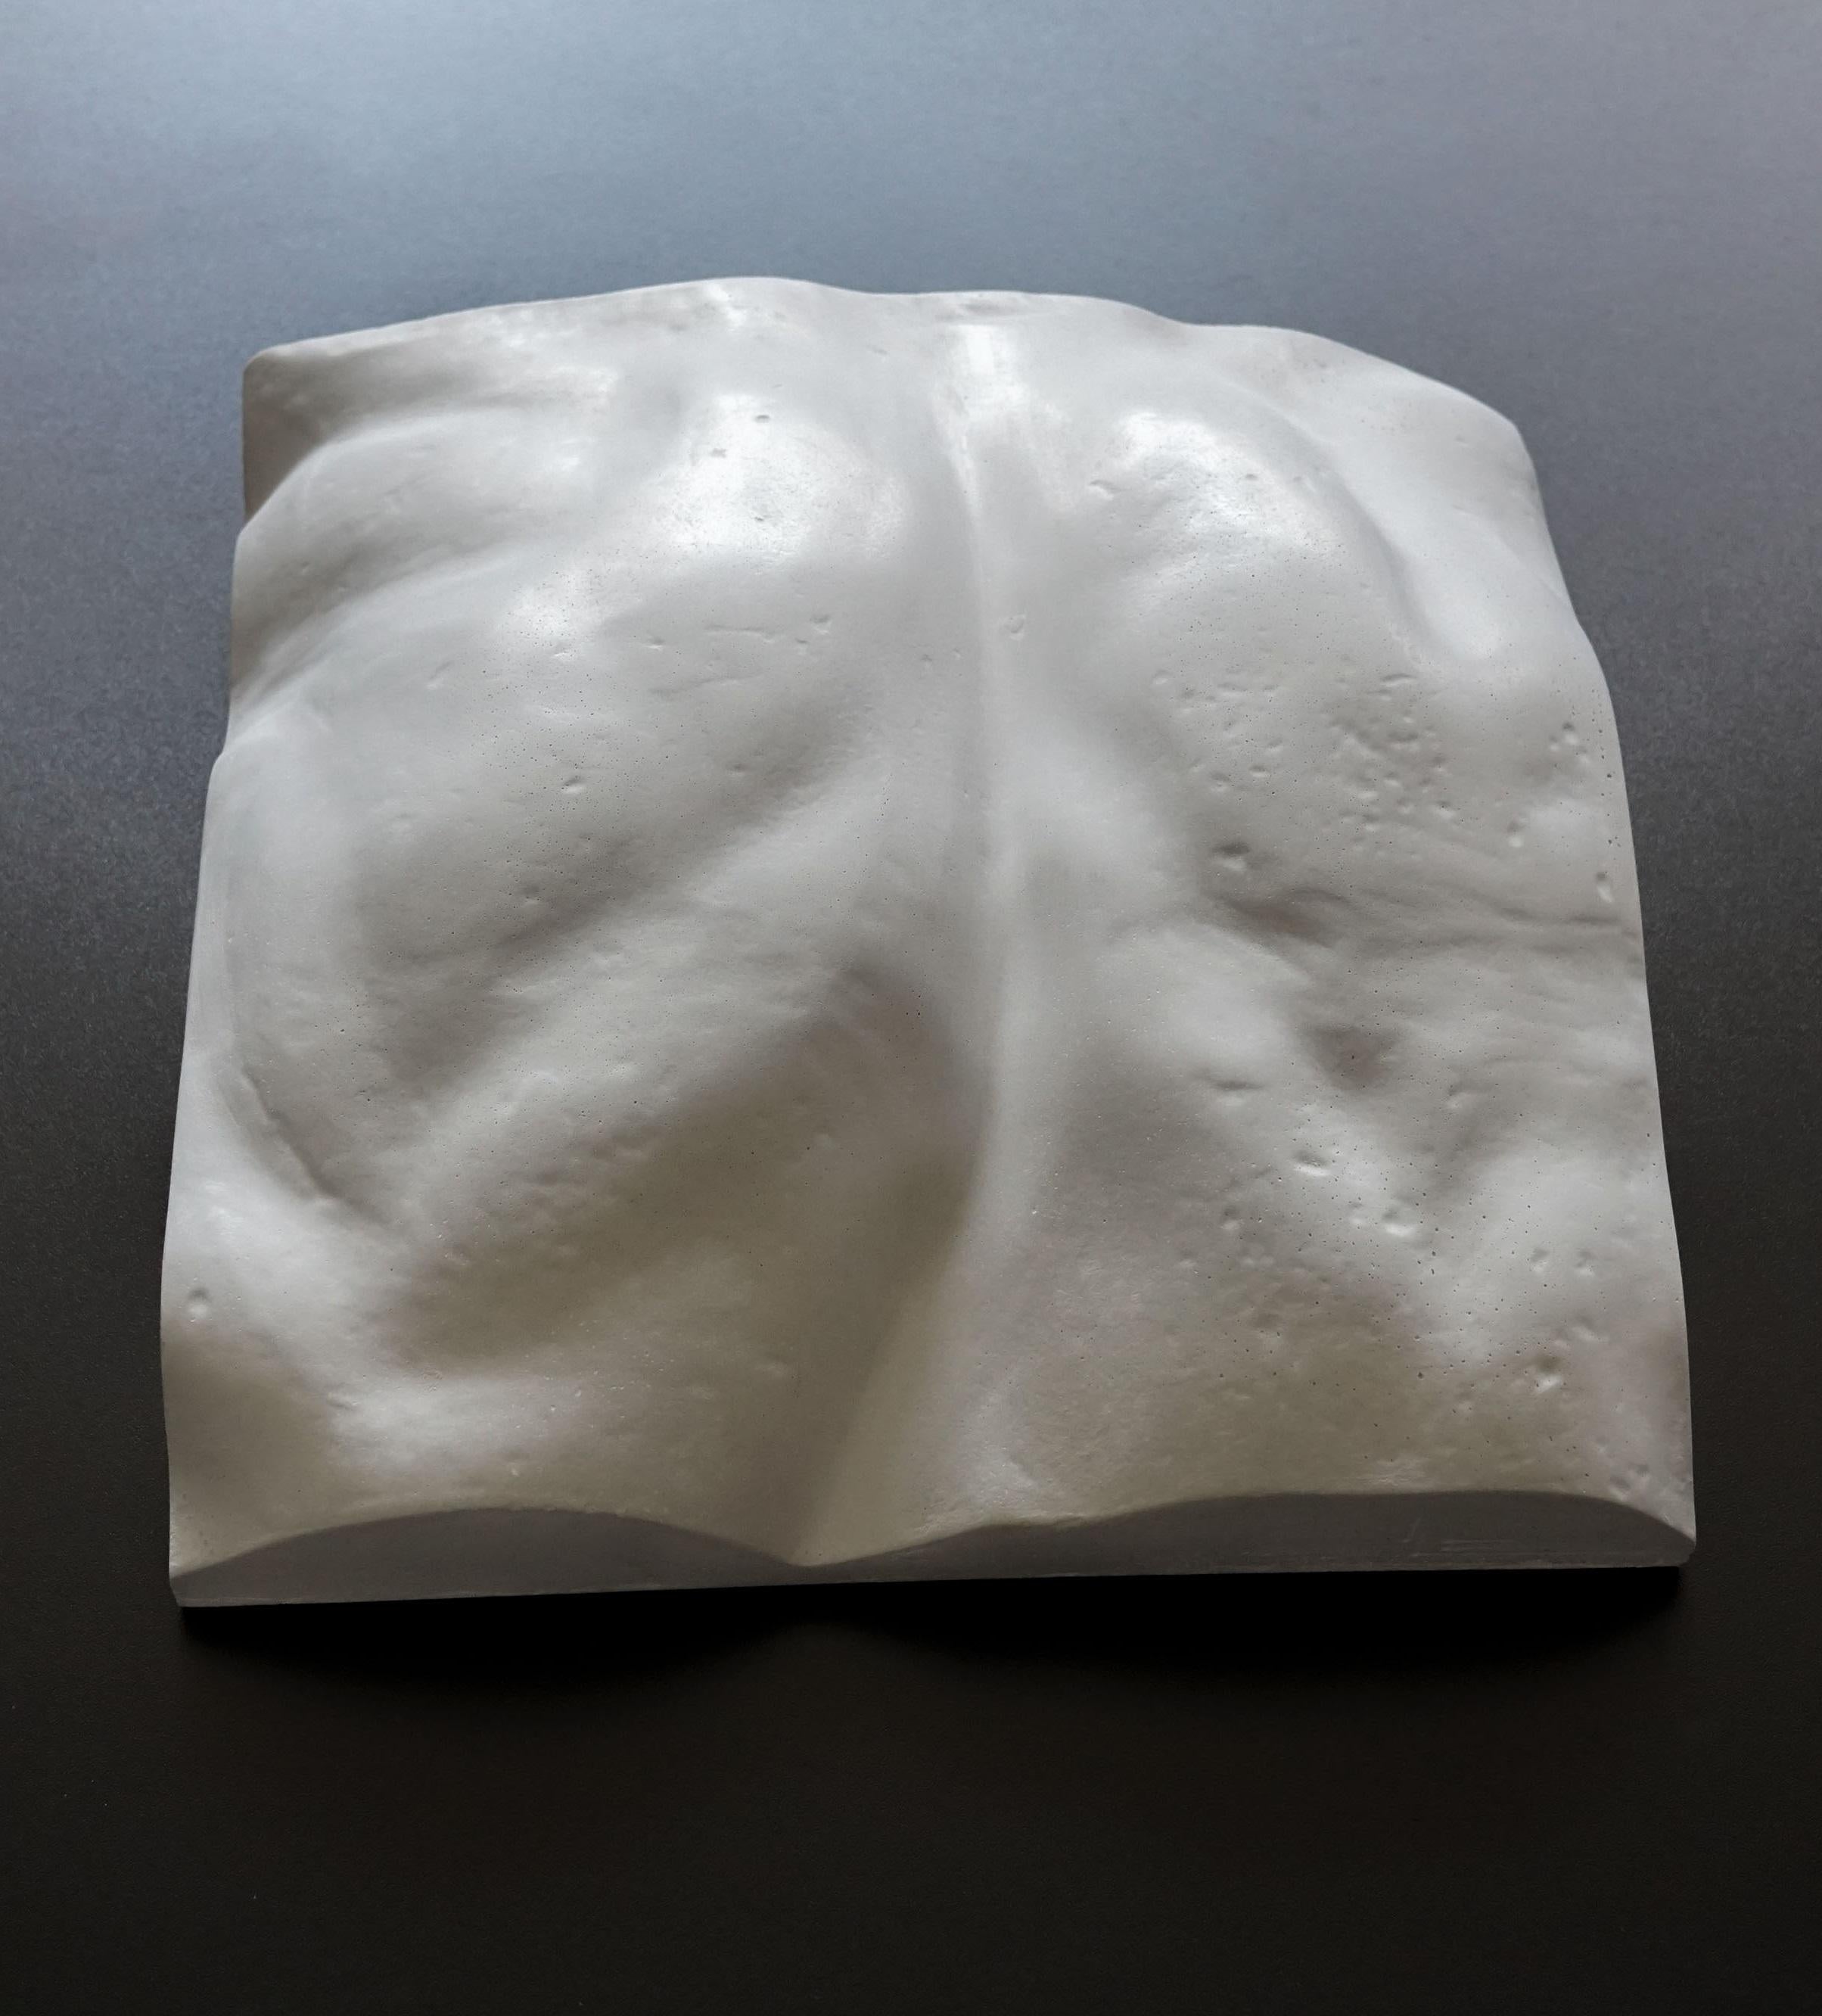 Aus extrem detaillierten 3D-Scans der wichtigsten klassischen Skulpturen aller Zeiten hat Eduard Locota den wesentlichen Teil des Kunstwerks digital ausgeschnitten und extrahiert, um ihn dann physisch in einer neuen, für das XX.
Eduard Locota